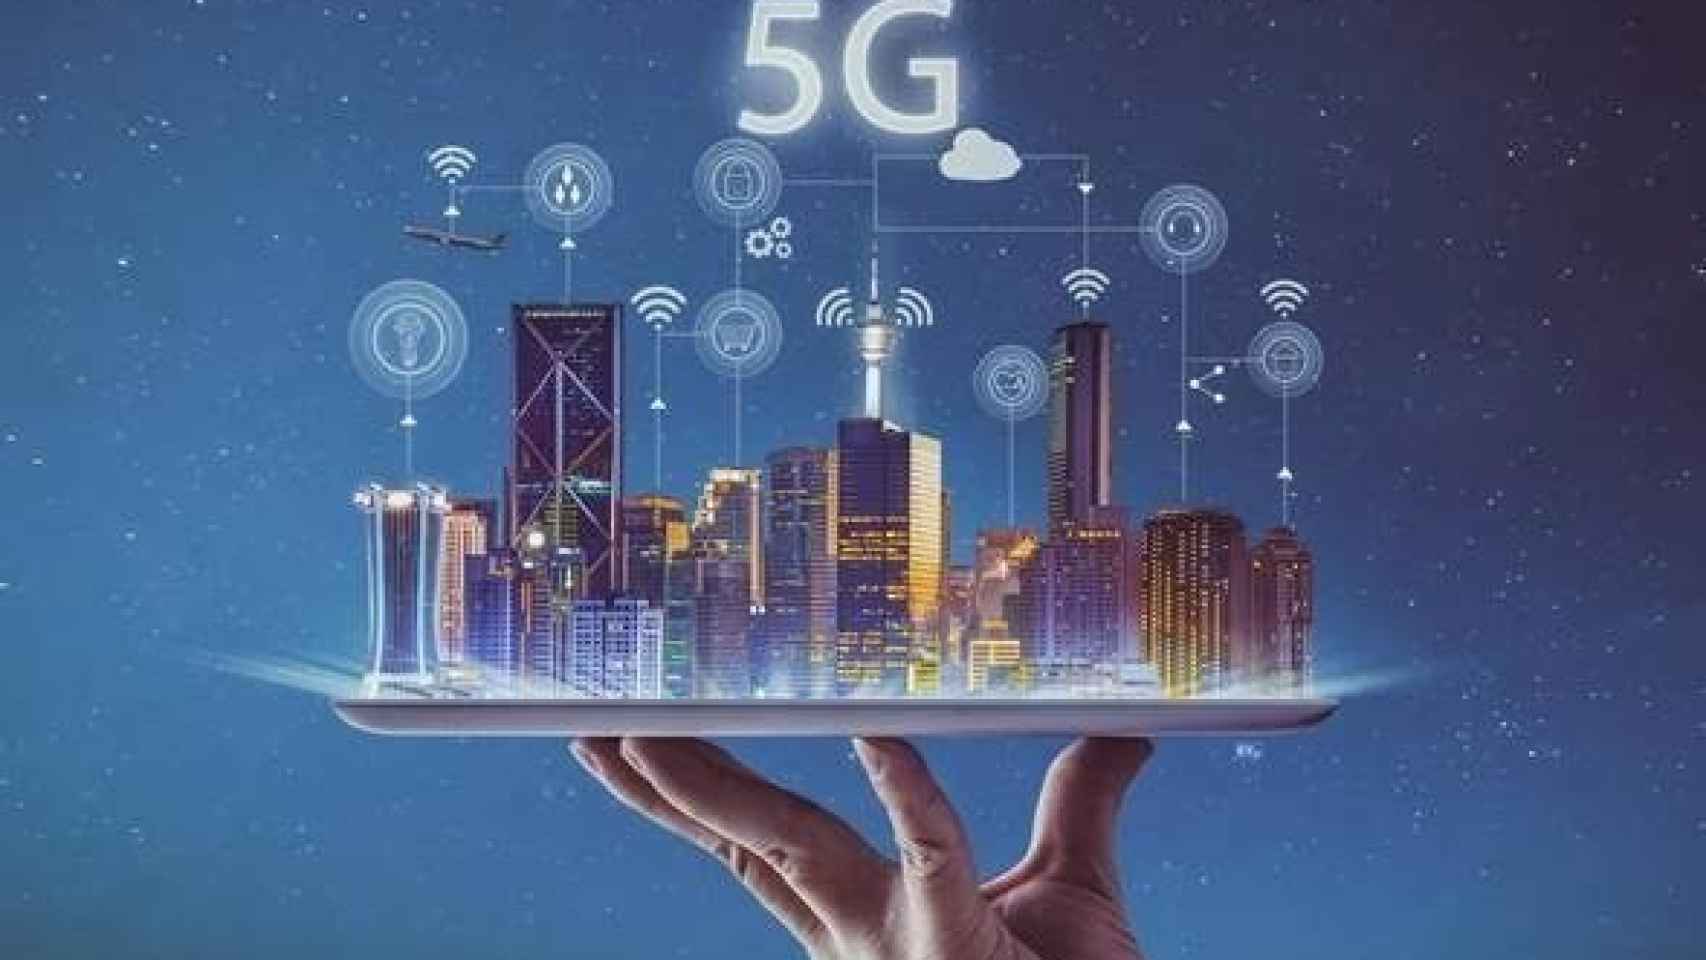 Imagen sobre las posibilidades de conexión que ofrece la nueva tecnología móvil 5G.